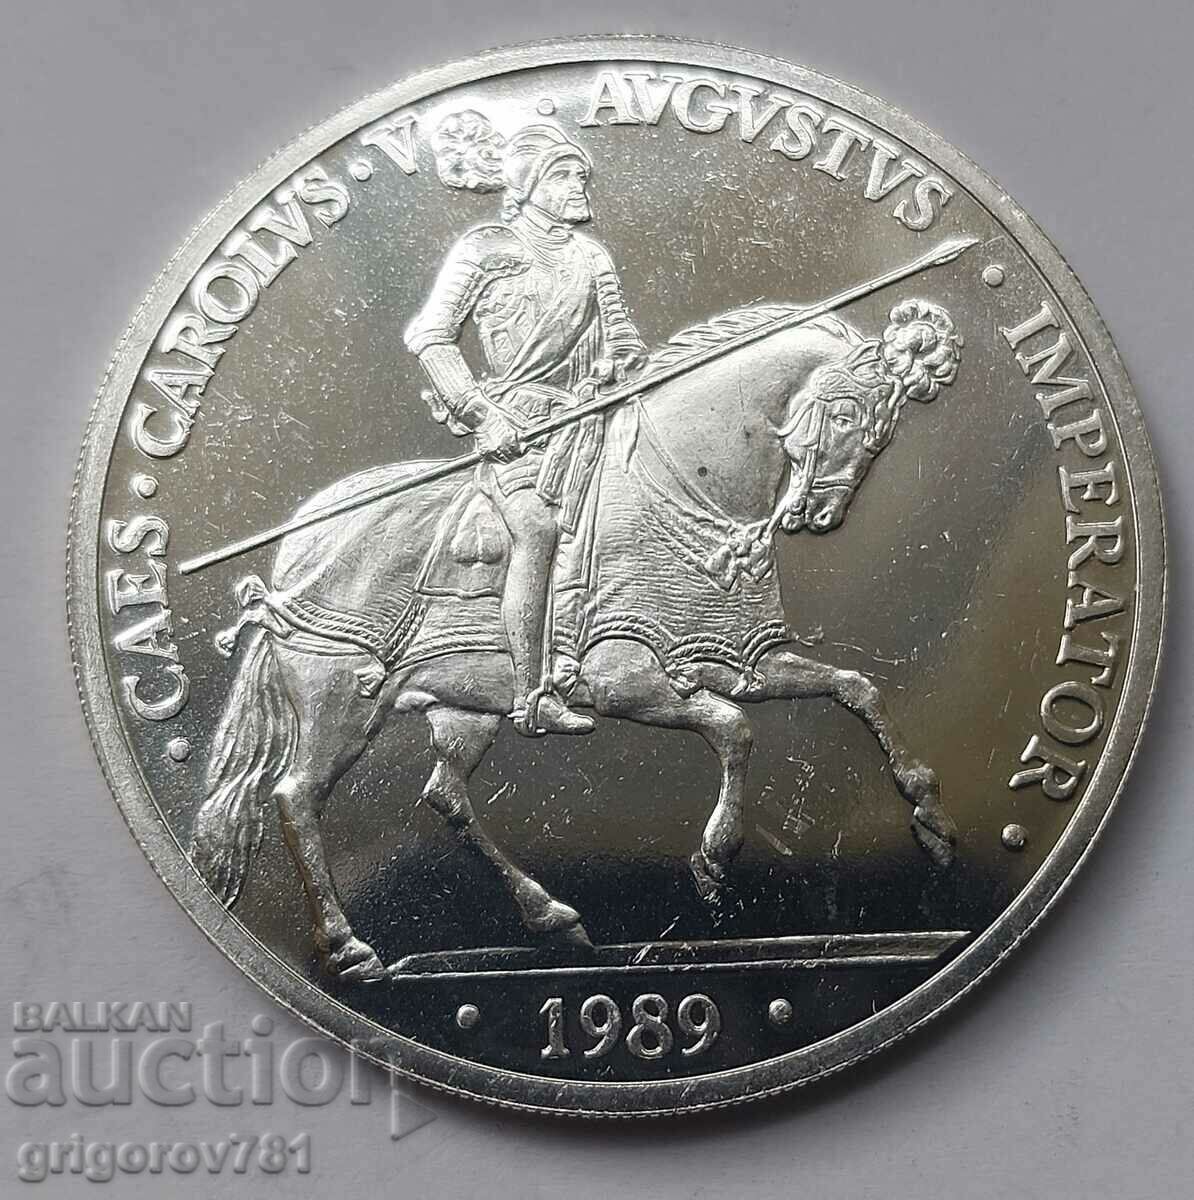 5 ECU Silver Spain 1989 - Silver Coin #1